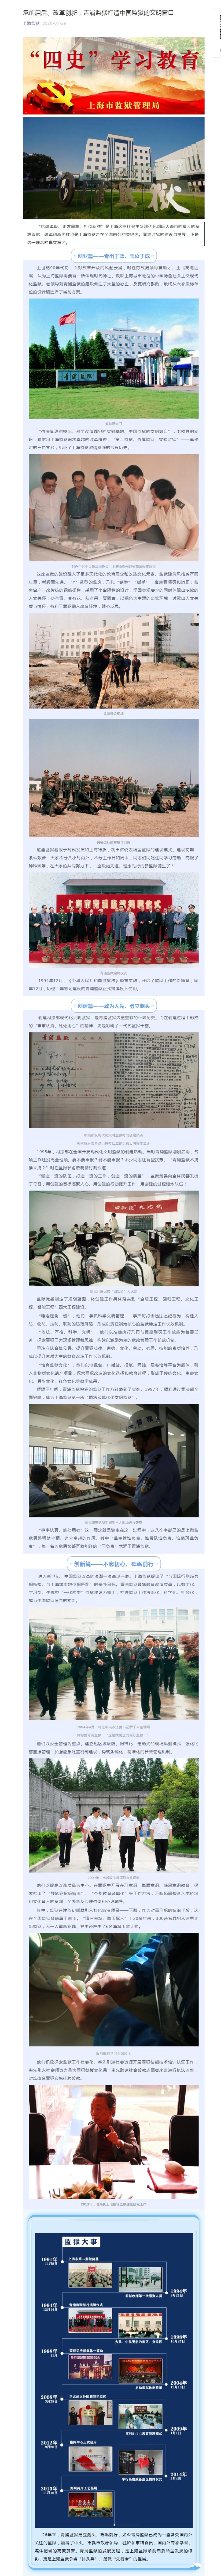 承前启后、改革创新，青浦监狱打造中国监狱的文明窗口.jpg